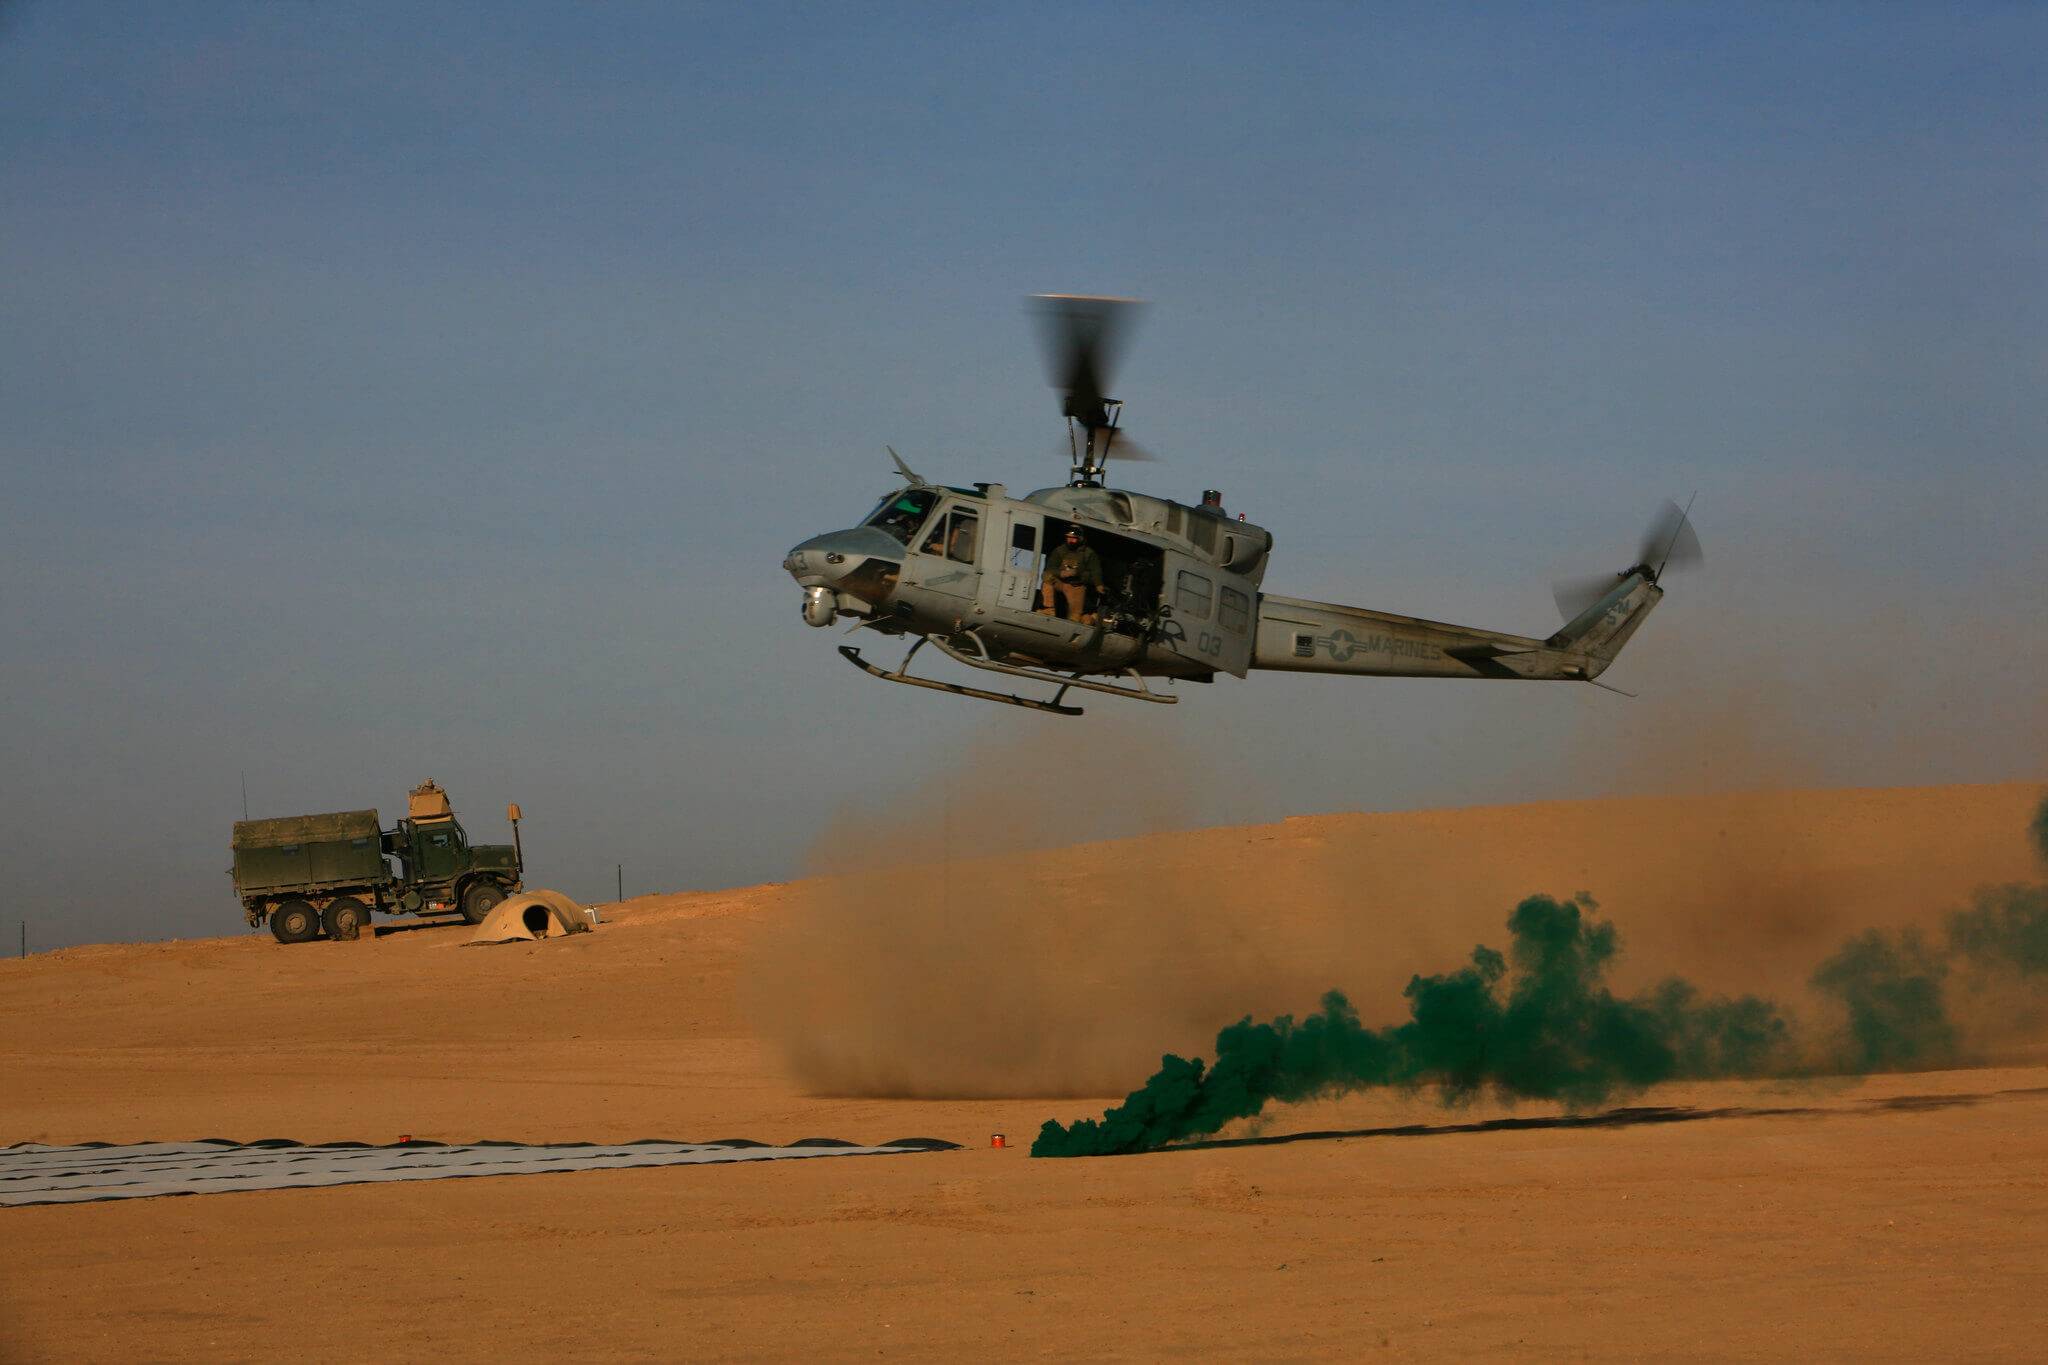 Amerikaanse troepen in Irak in 2008. DVIDSHUB - Flickr